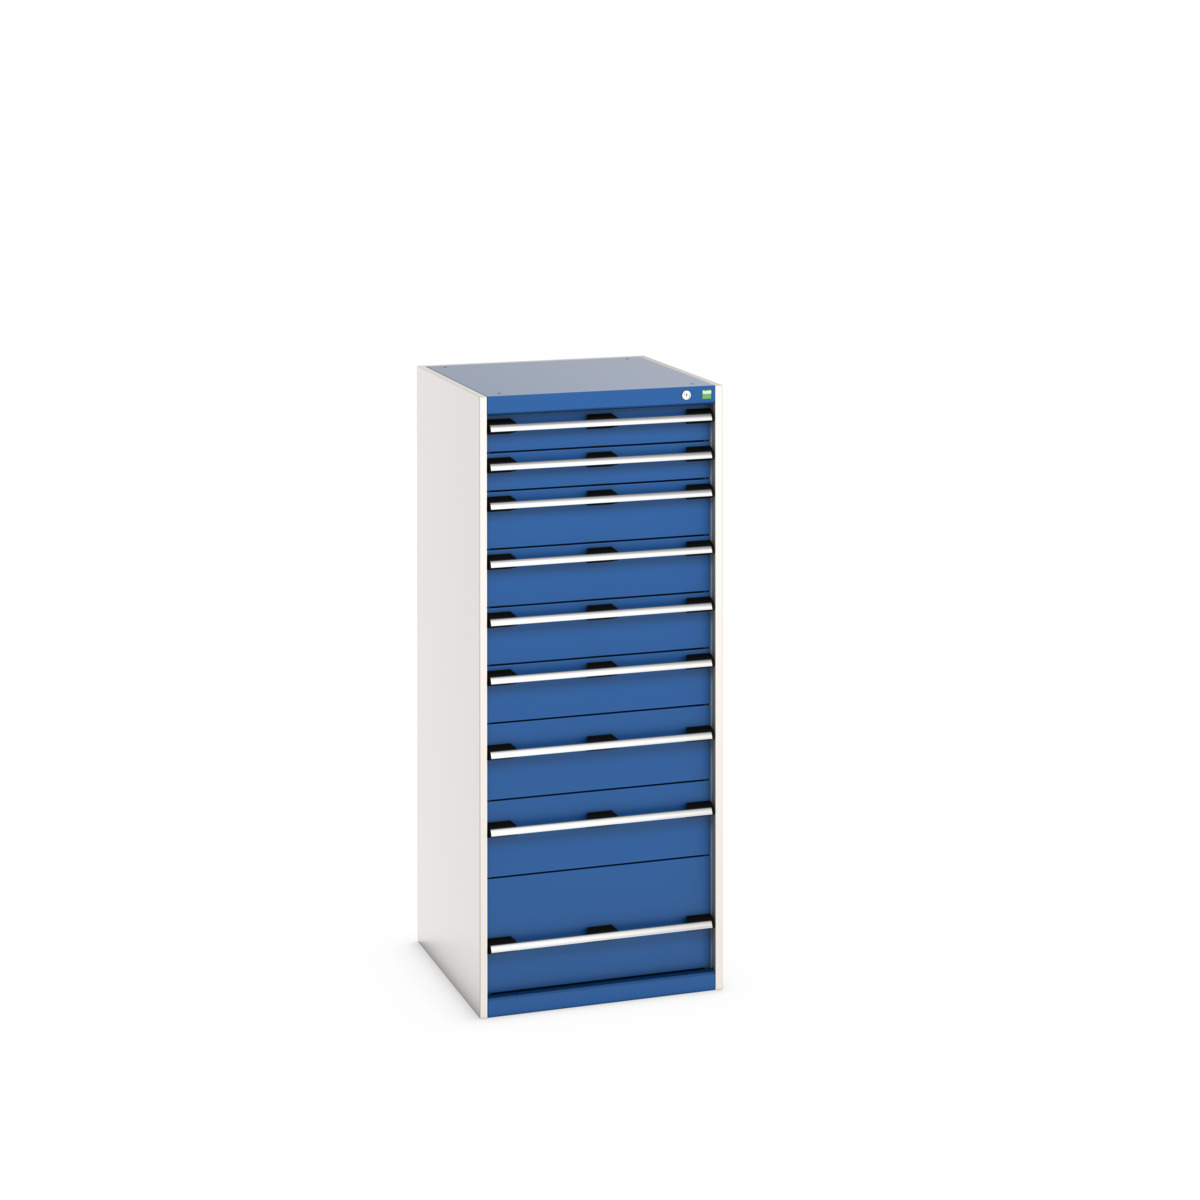 40027045.11V - cubio drawer cabinet